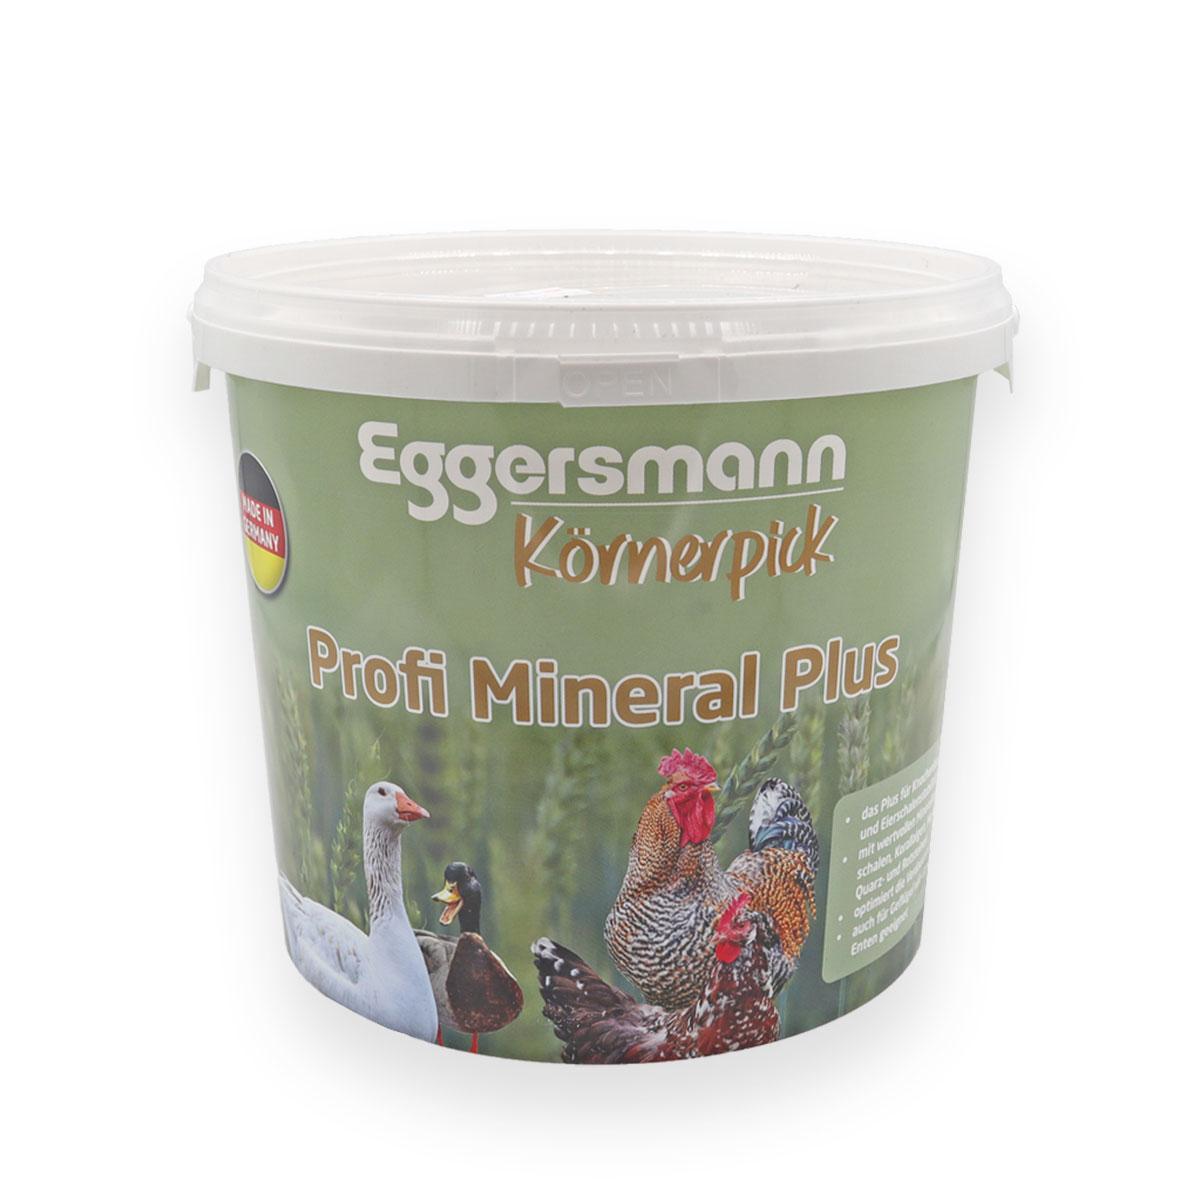 Eggersmann Körnerpick - Profi Mineral Plus 5kg